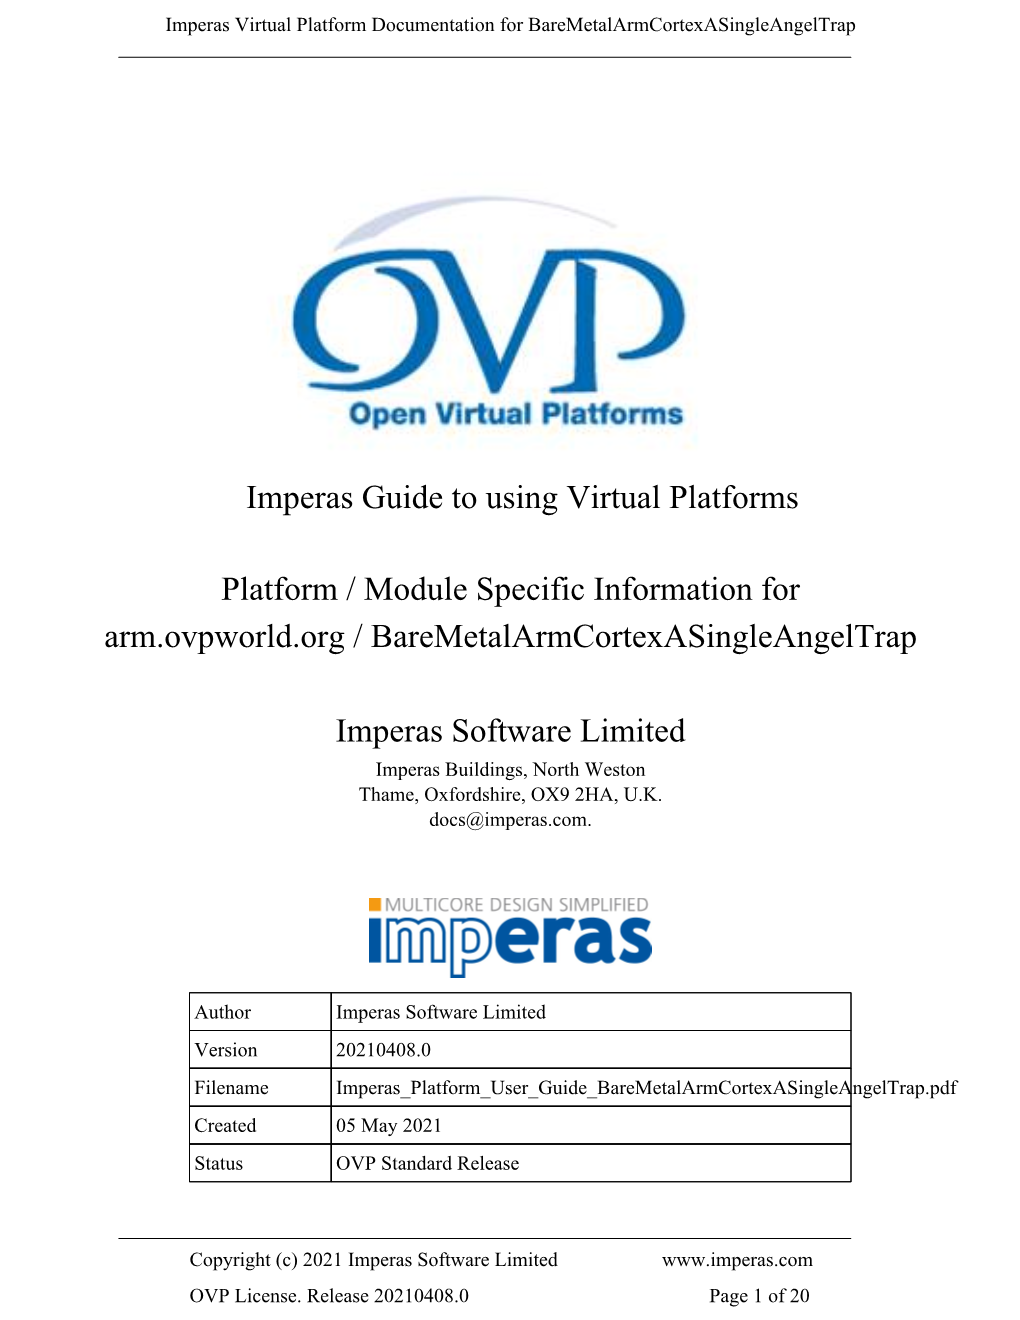 Imperas Guide to Using Virtual Platforms